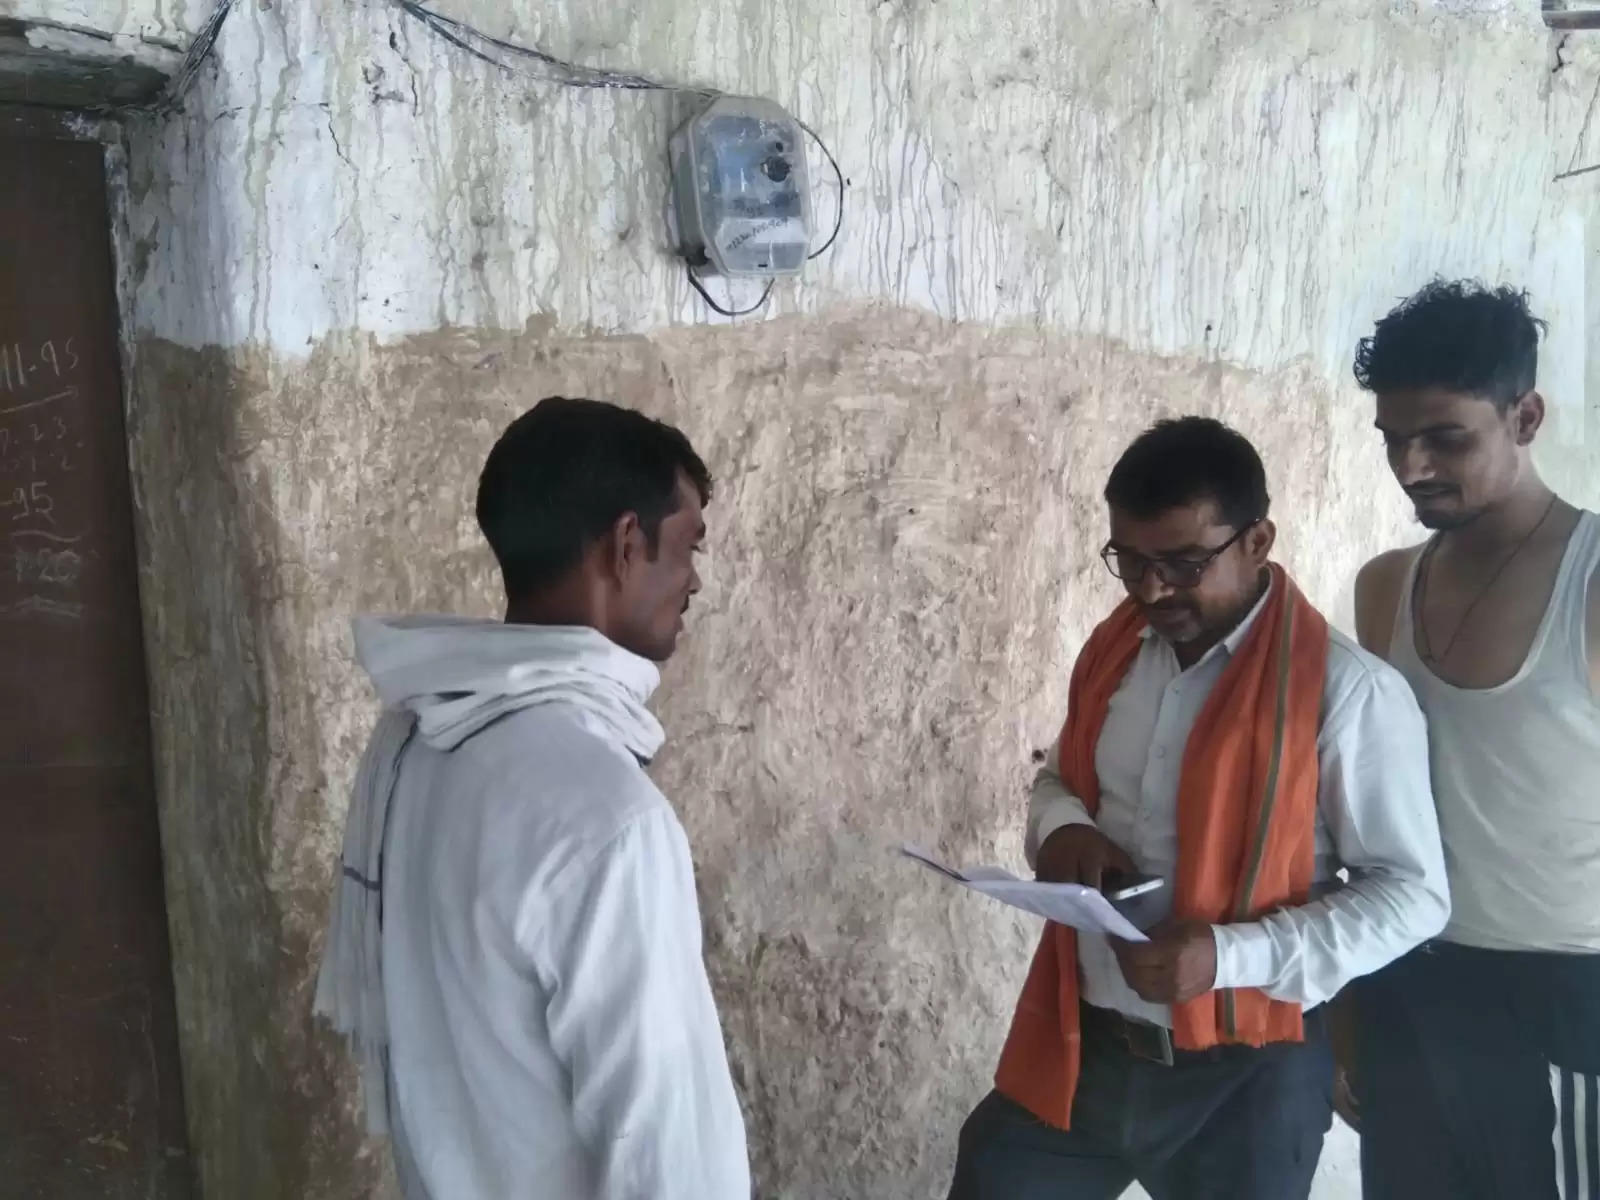 Ayodhya News: बीकापुर विद्युत के एल के फीडर के संविदा लाइनमैन तथा सहायक लाइनमैन द्वारा बिल जमा करने का उपभोक्ताओं पर बना रहे दबाव